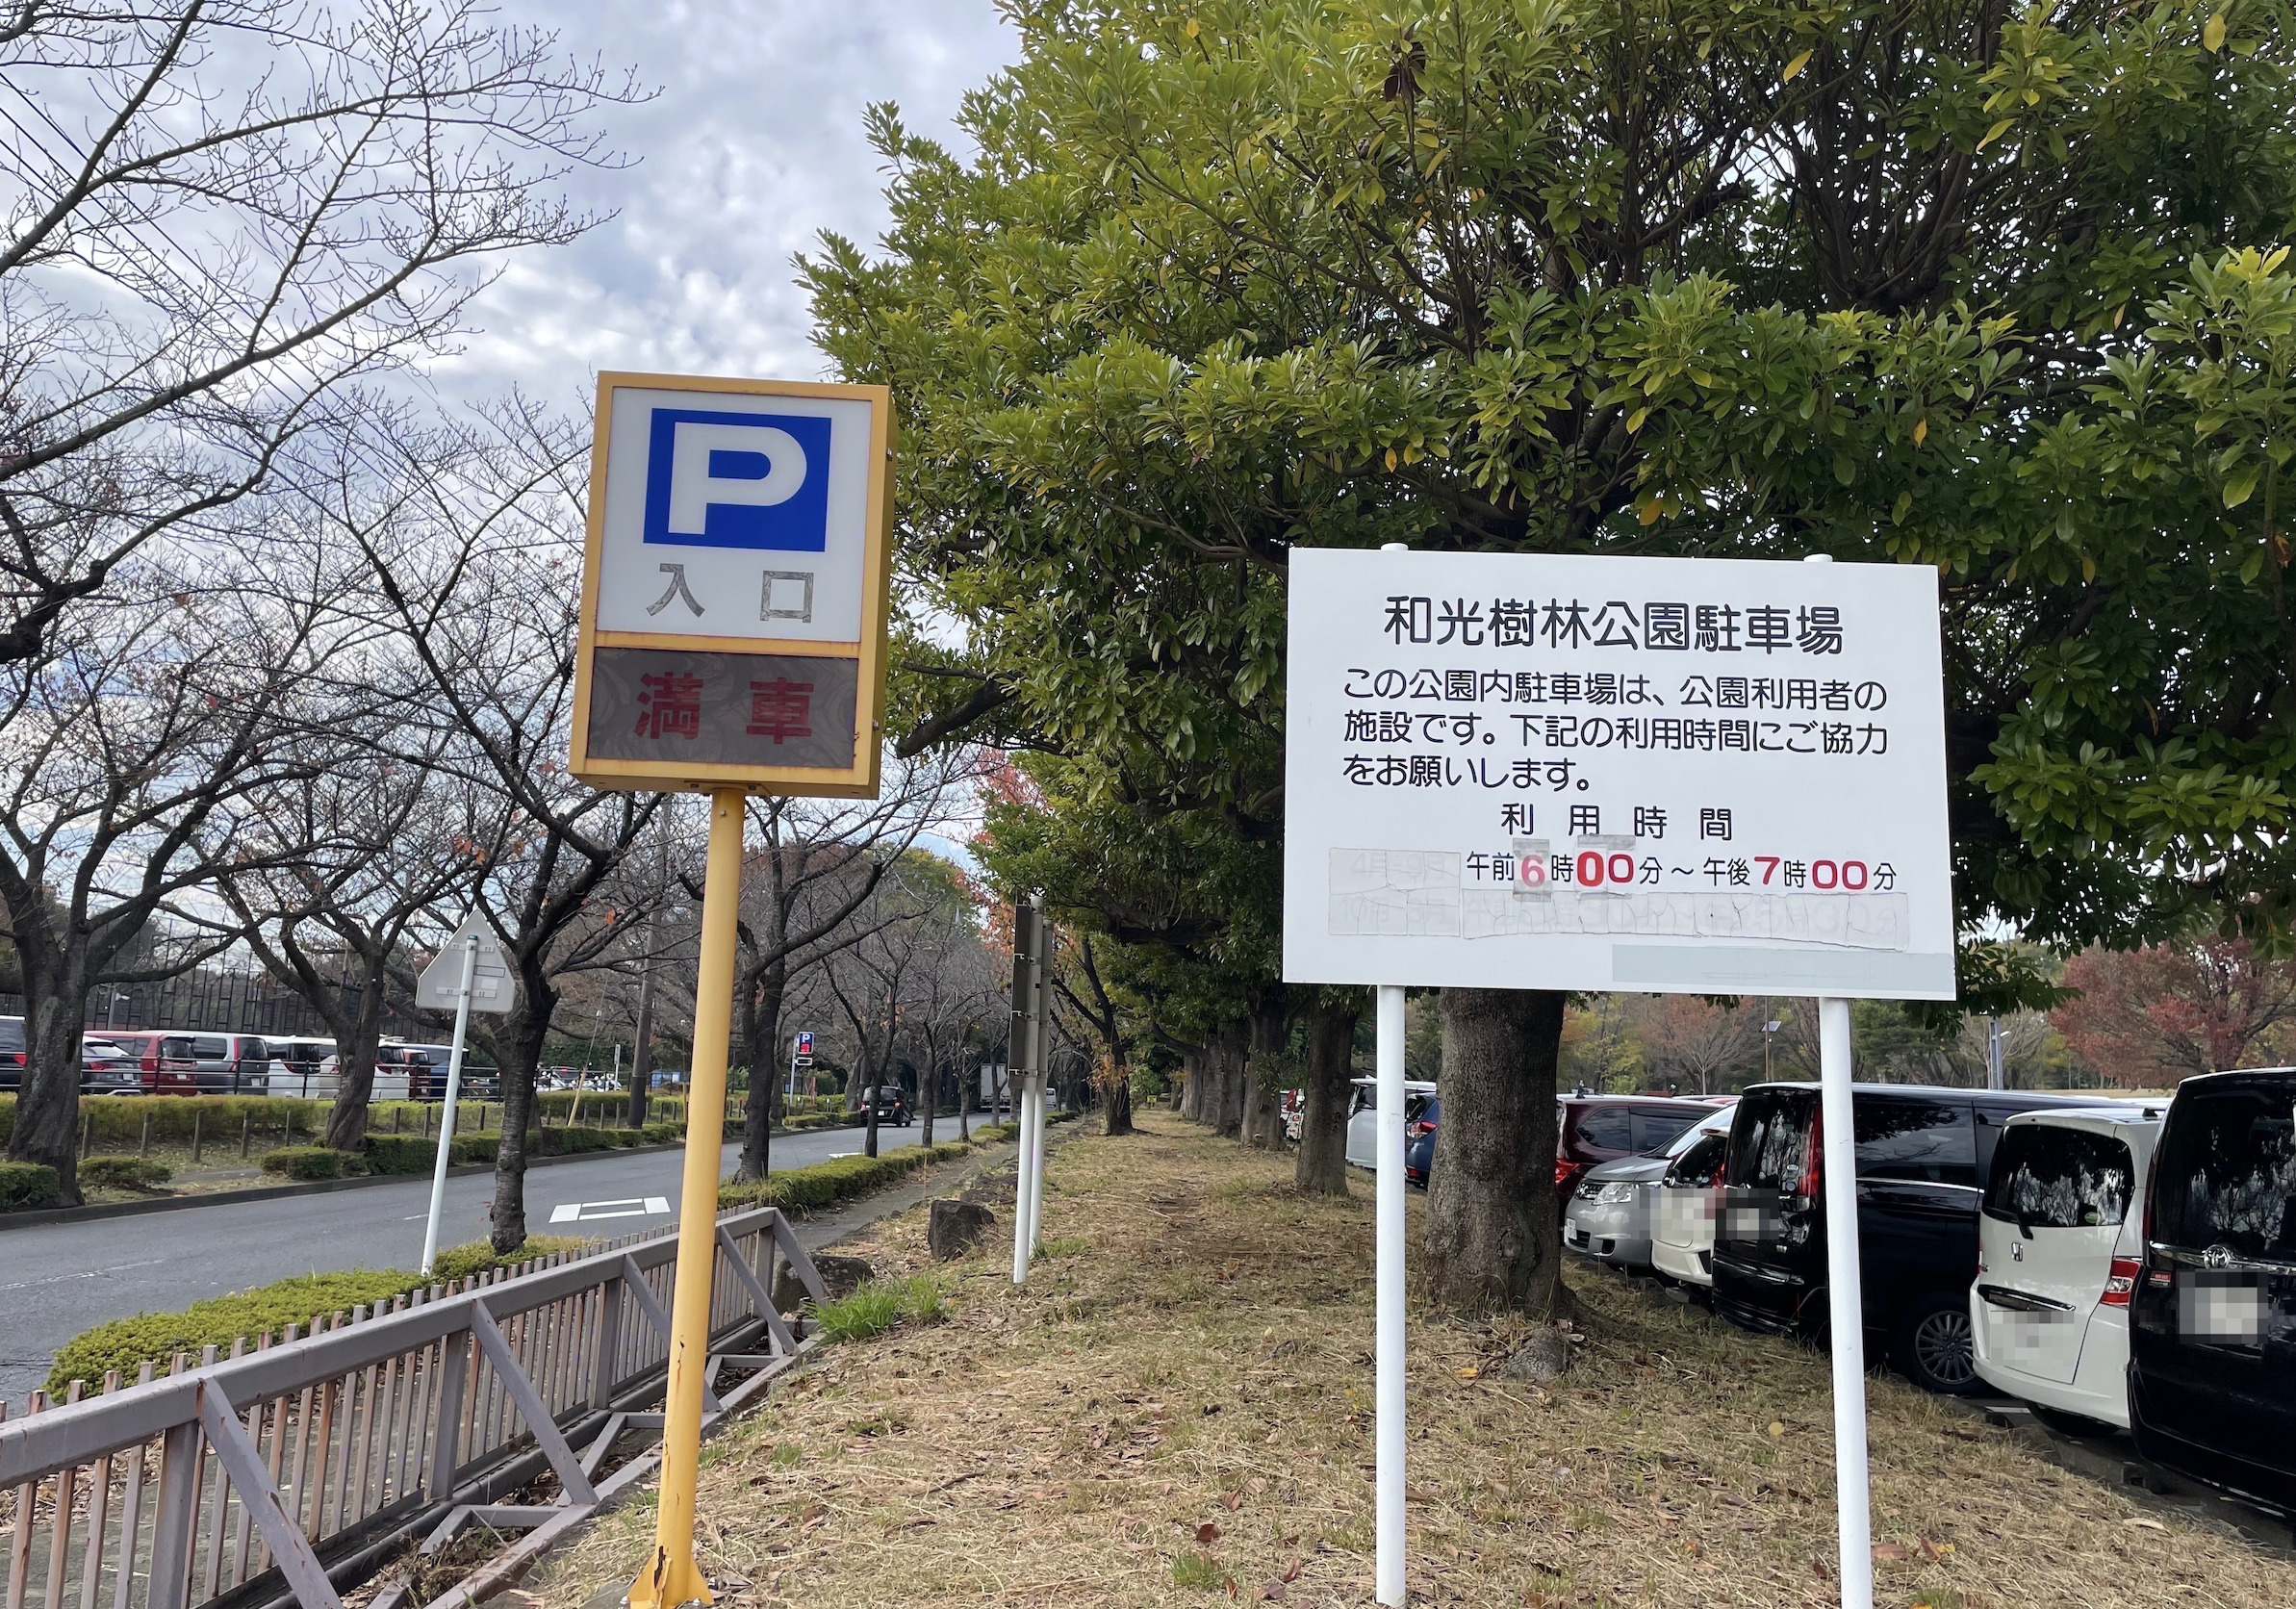 和光樹林公園の駐車場